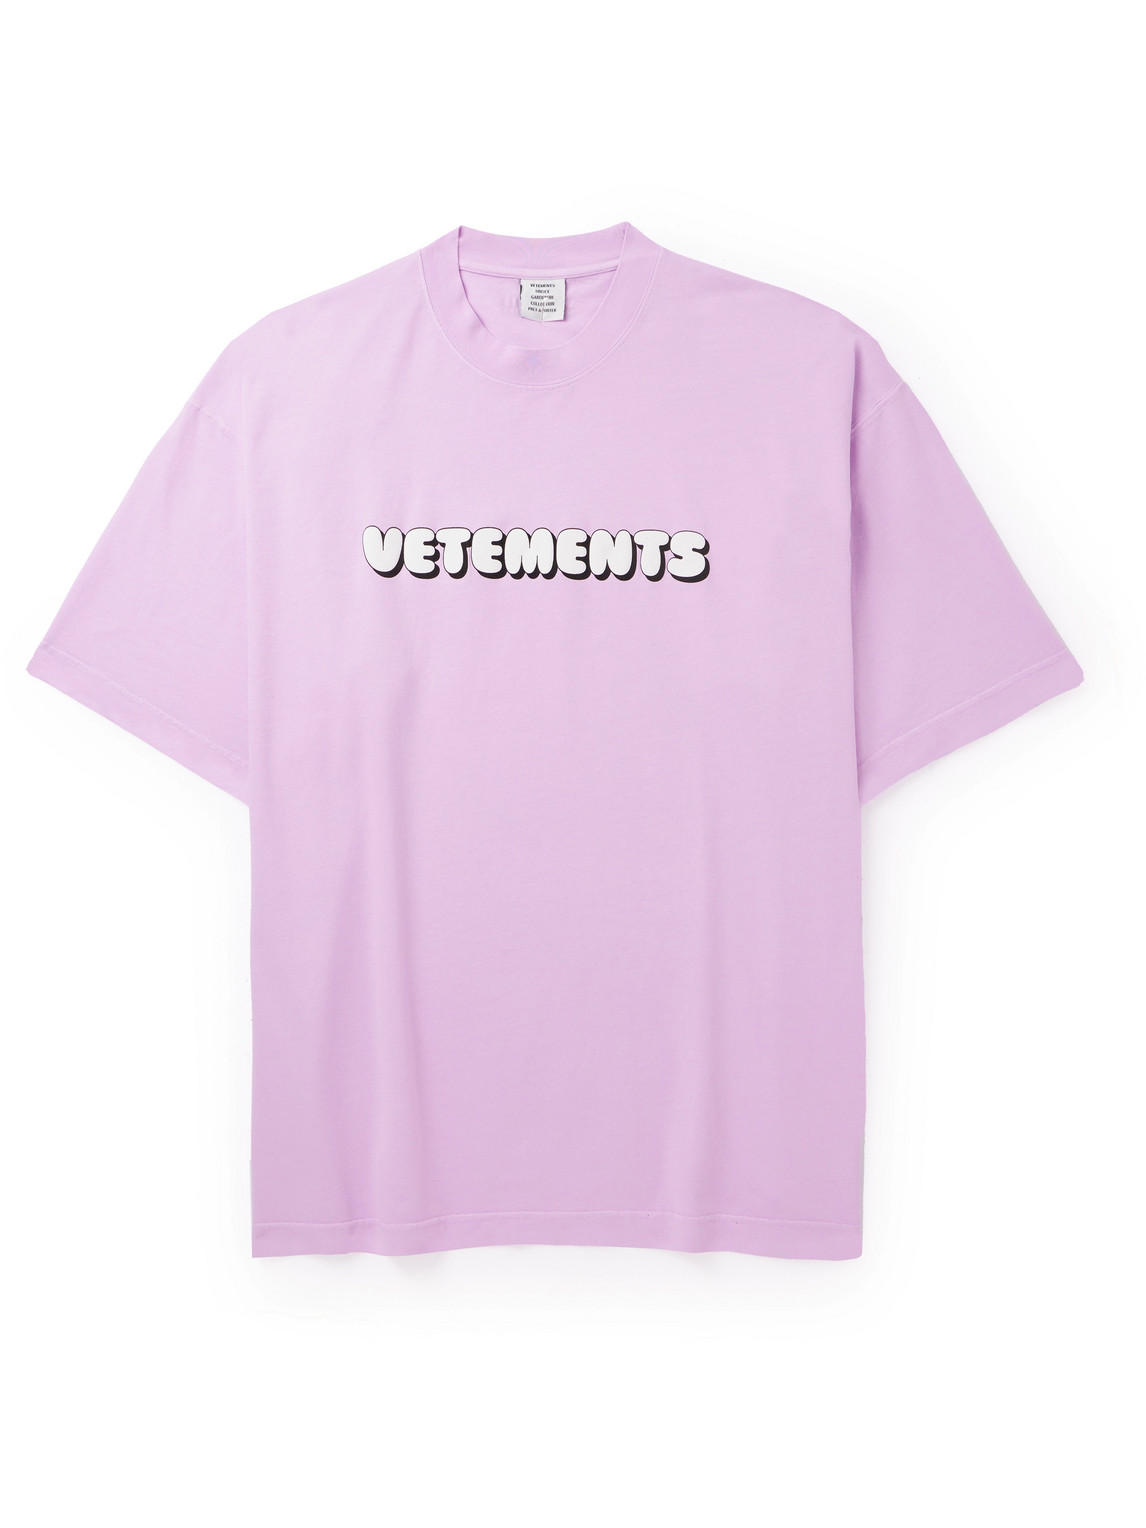 VETEMENTS - Logo-Print Cotton-Jersey T-Shirt - Men - Pink - L von VETEMENTS